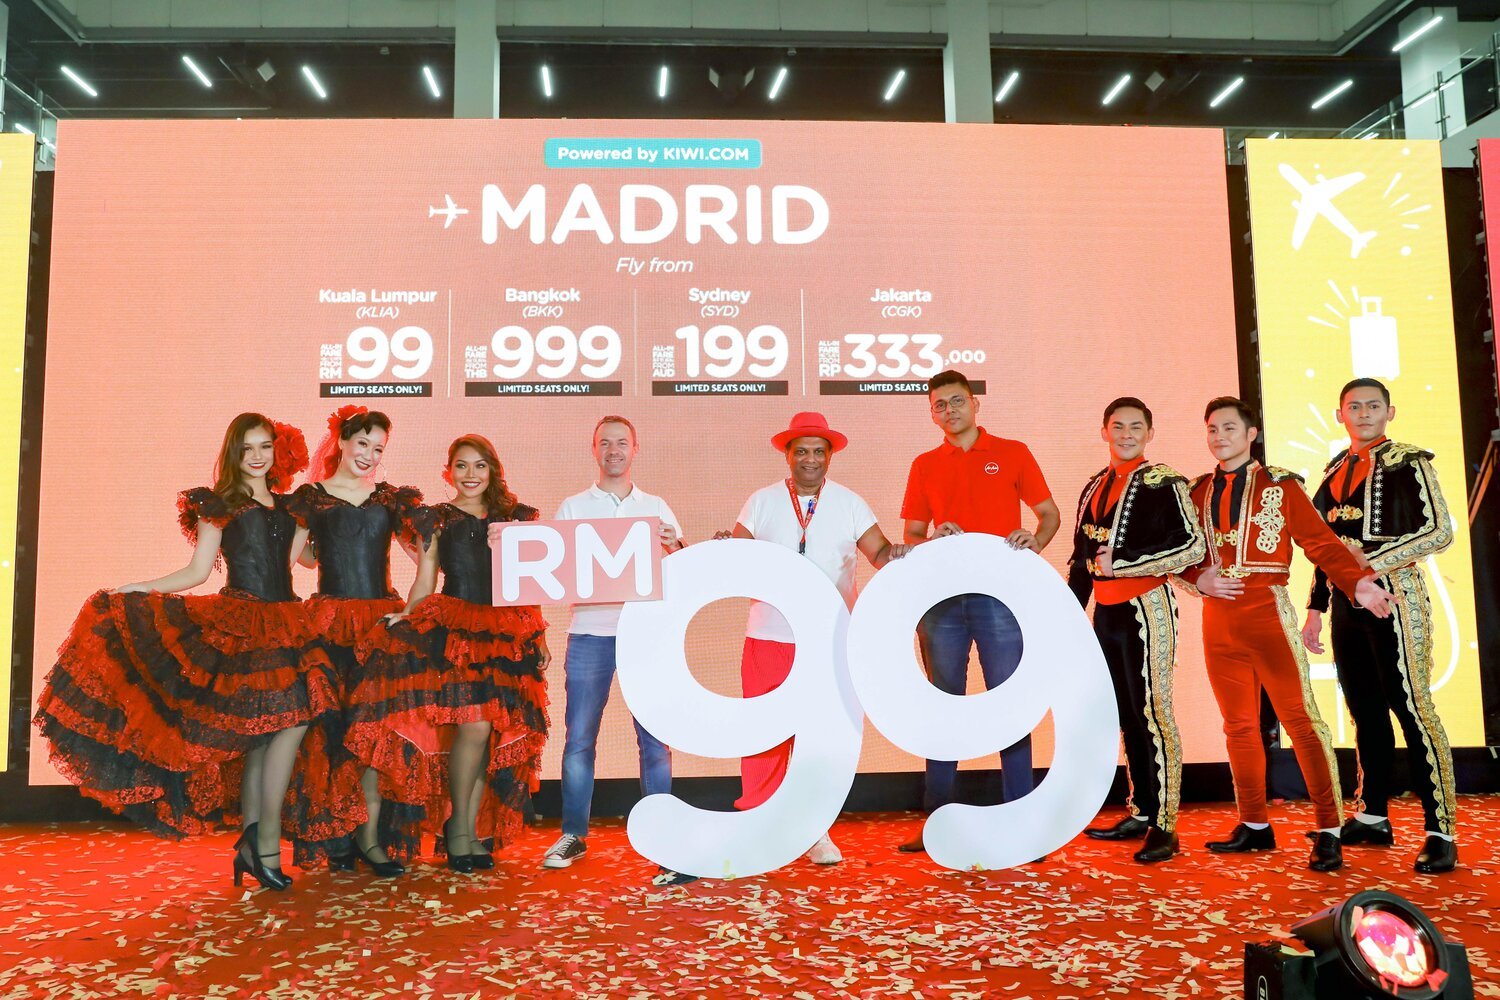 Airasia Menawarkan Tiket Ke Madrid Sepanyol Dari Serendah Rm99 Menerusi Model Perniagaan Baru